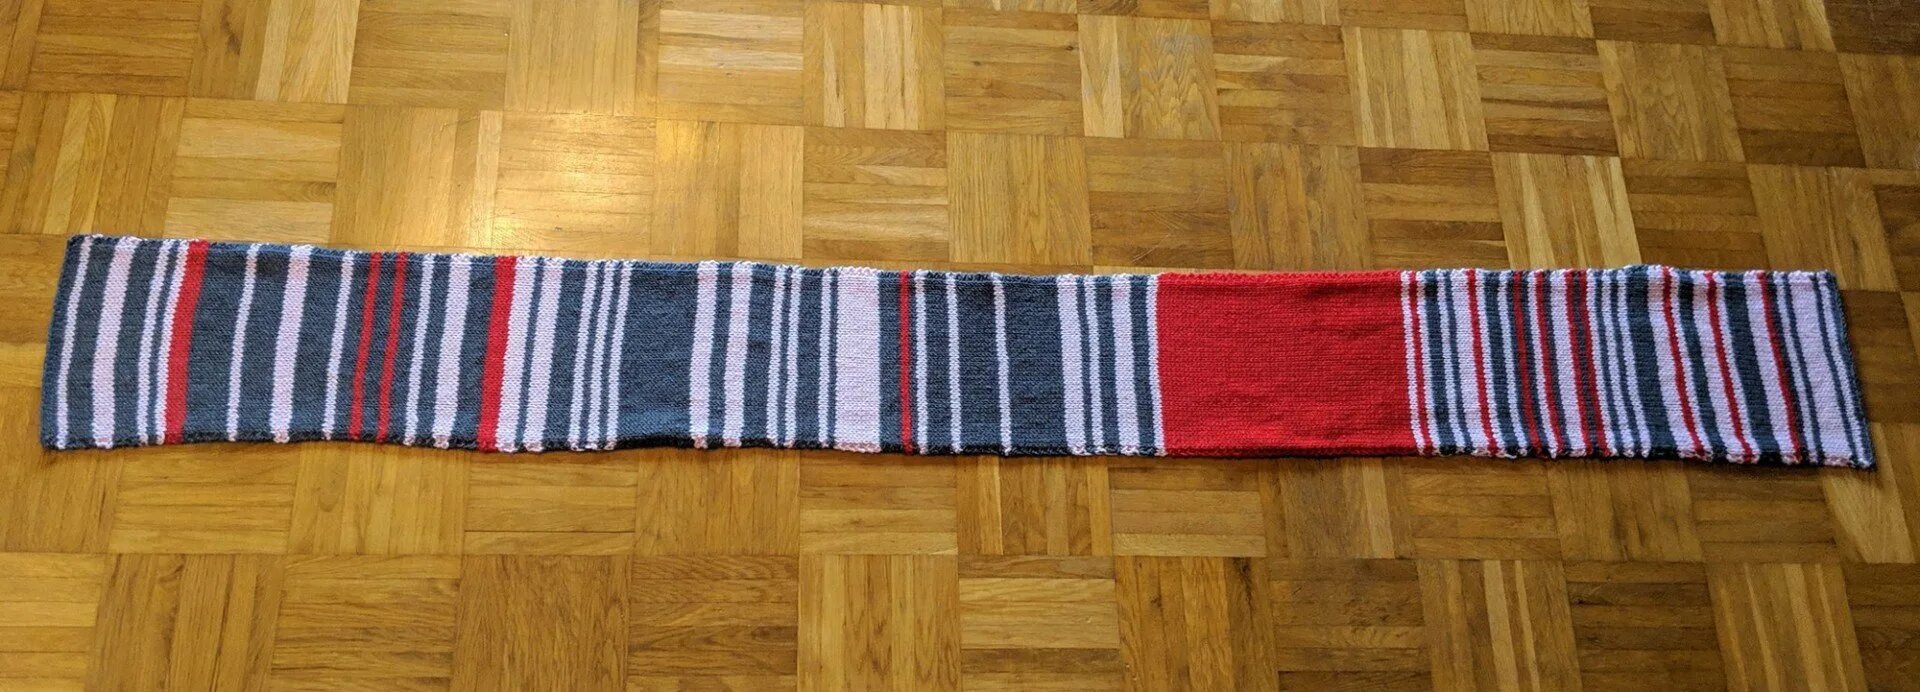 Алиса собирается связать шарф длиной 130 см. Плетение шарфа полосами. Шарф опозданий поездов. Шарф для поезда Абрикобукс. Шарф переплетенный из двух полос.